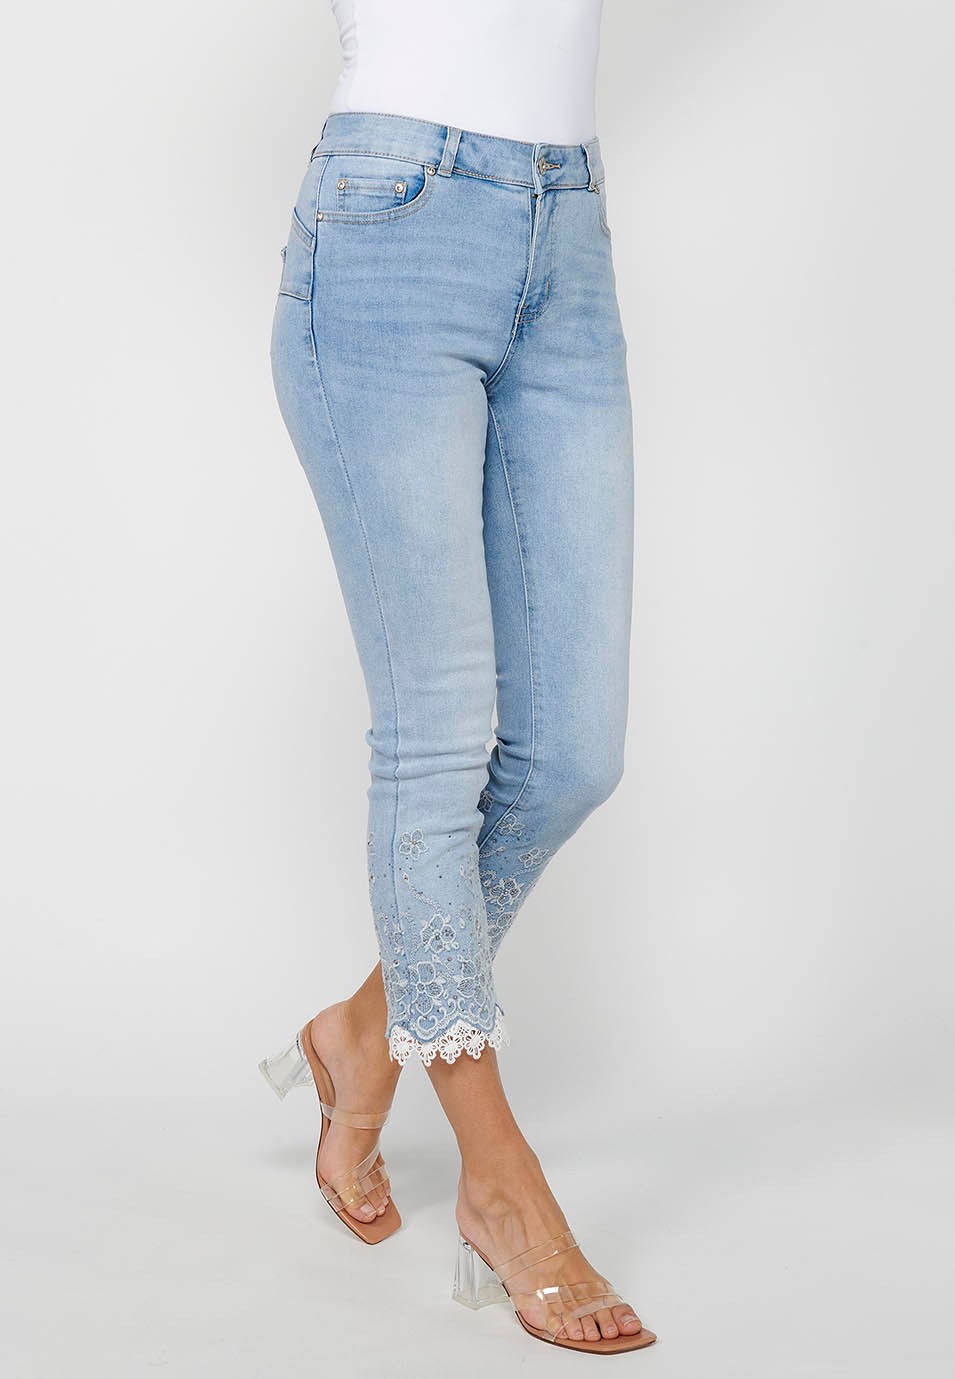 Pantalón largo jeans slim con Cierre delantero con cremallera y Detalles bordados florales de Color Azul claro para Mujer 3